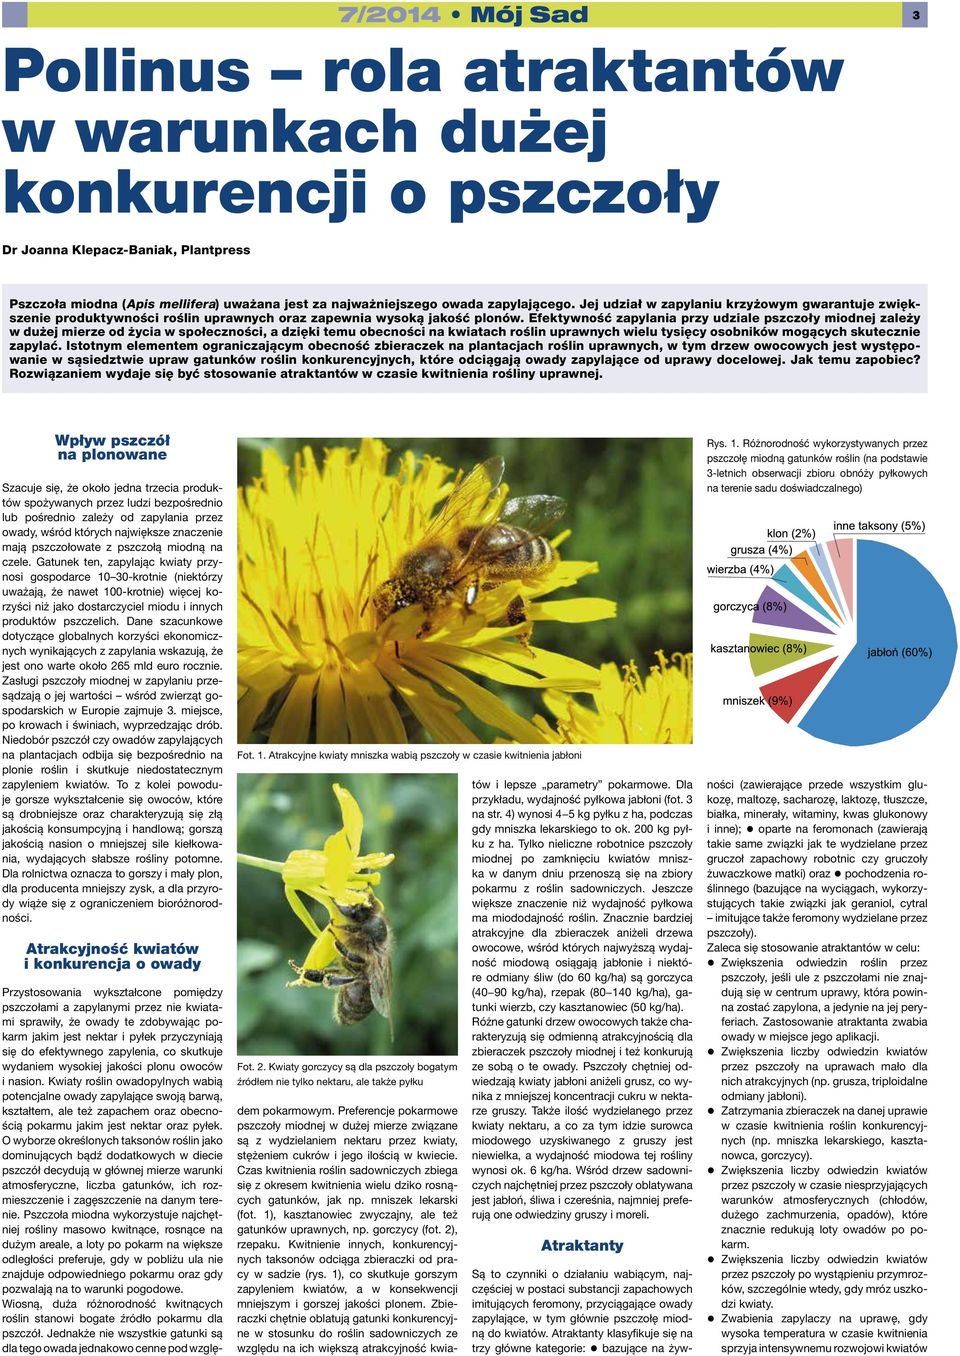 Efektywność zapylania przy udziale pszczoły miodnej zależy w dużej mierze od życia w społeczności, a dzięki temu obecności na kwiatach roślin uprawnych wielu tysięcy osobników mogących skutecznie